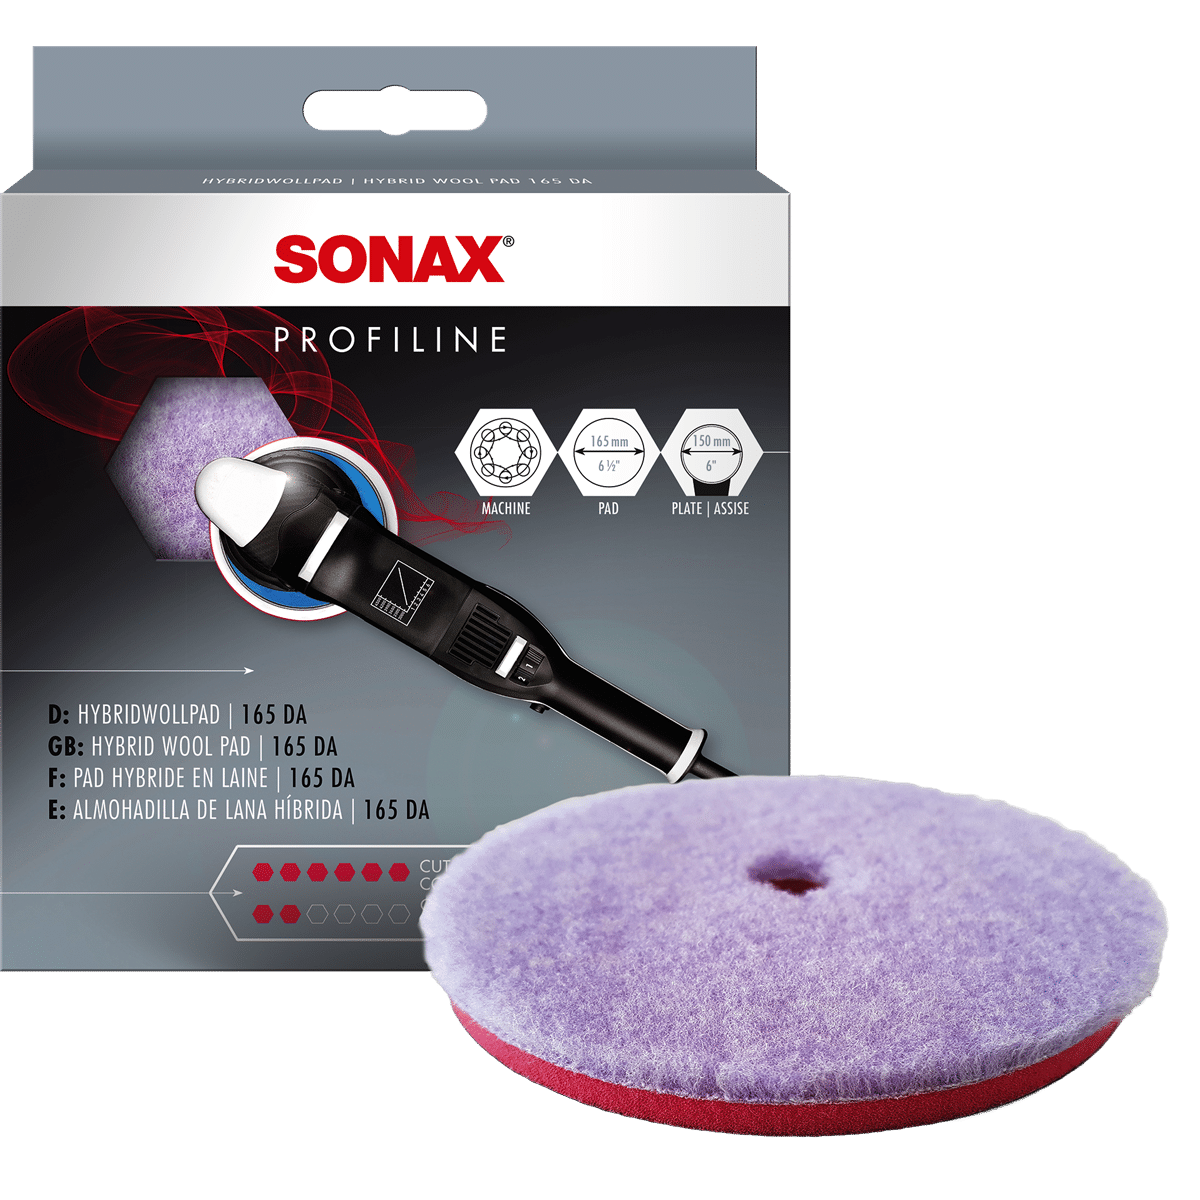 Sonax Hybridwollpad 165 DA